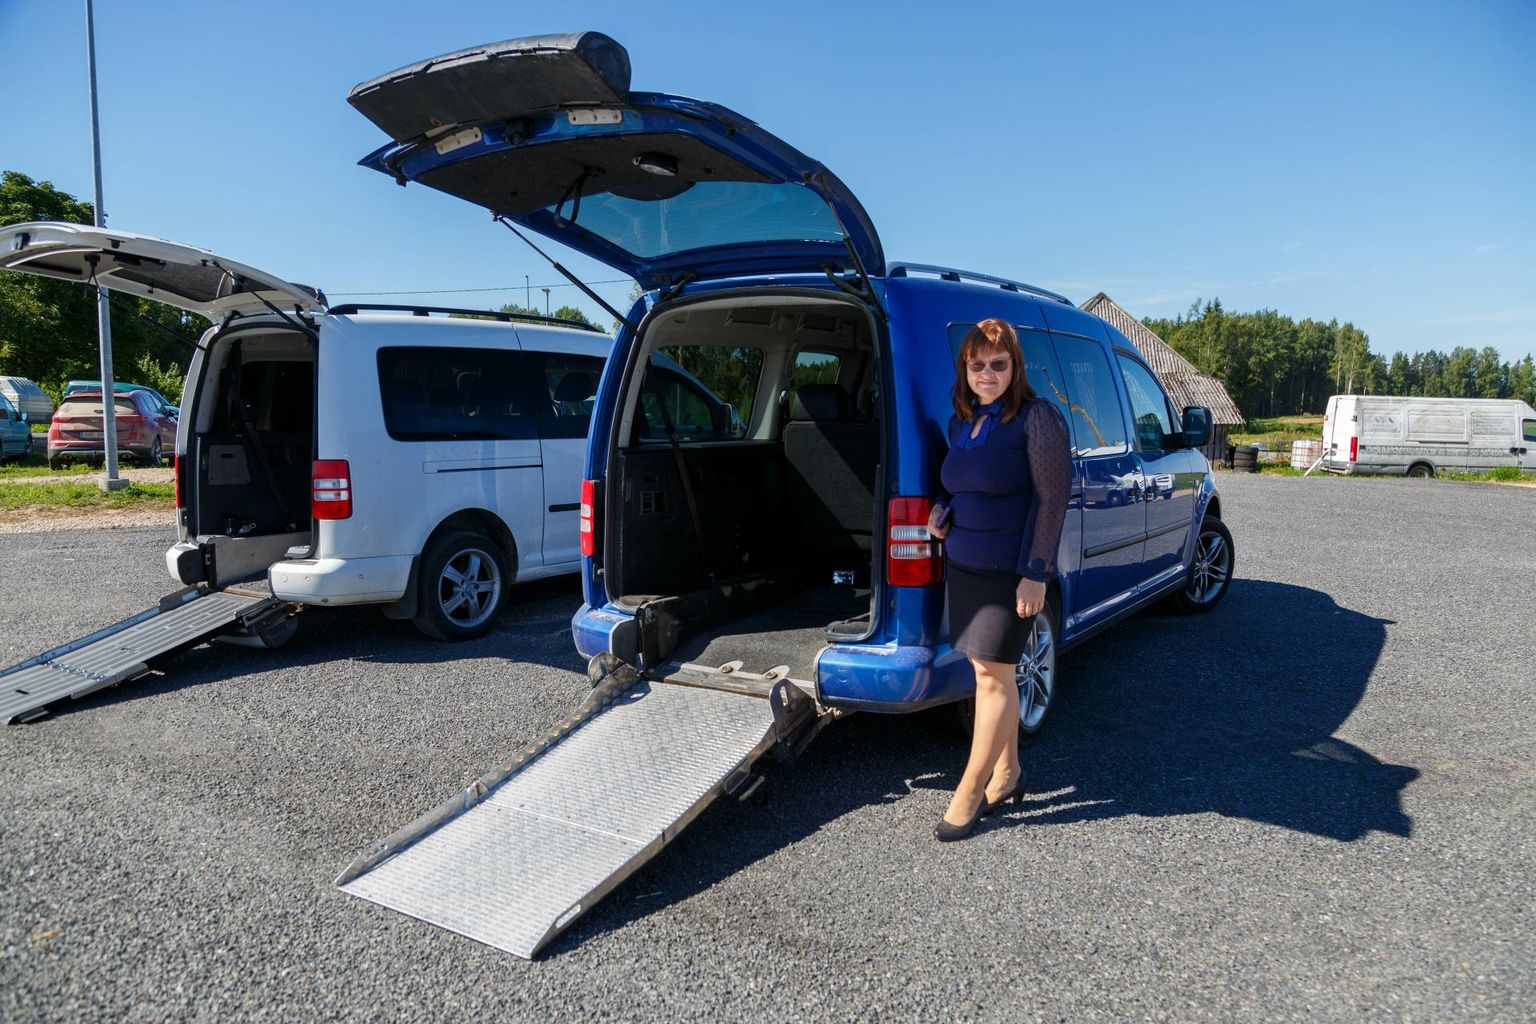 Merling Reisid OÜ juhatuse liige Inge Vill demonstreeris erivajadustele kohandatud autosid Volkswagen Caddy, mis hakkavad septembrist sotsiaaltranspordi teenust osutama. Mõlemal väikebussil on kaldteed ning ratastooliga inimese transportimise võimalus.